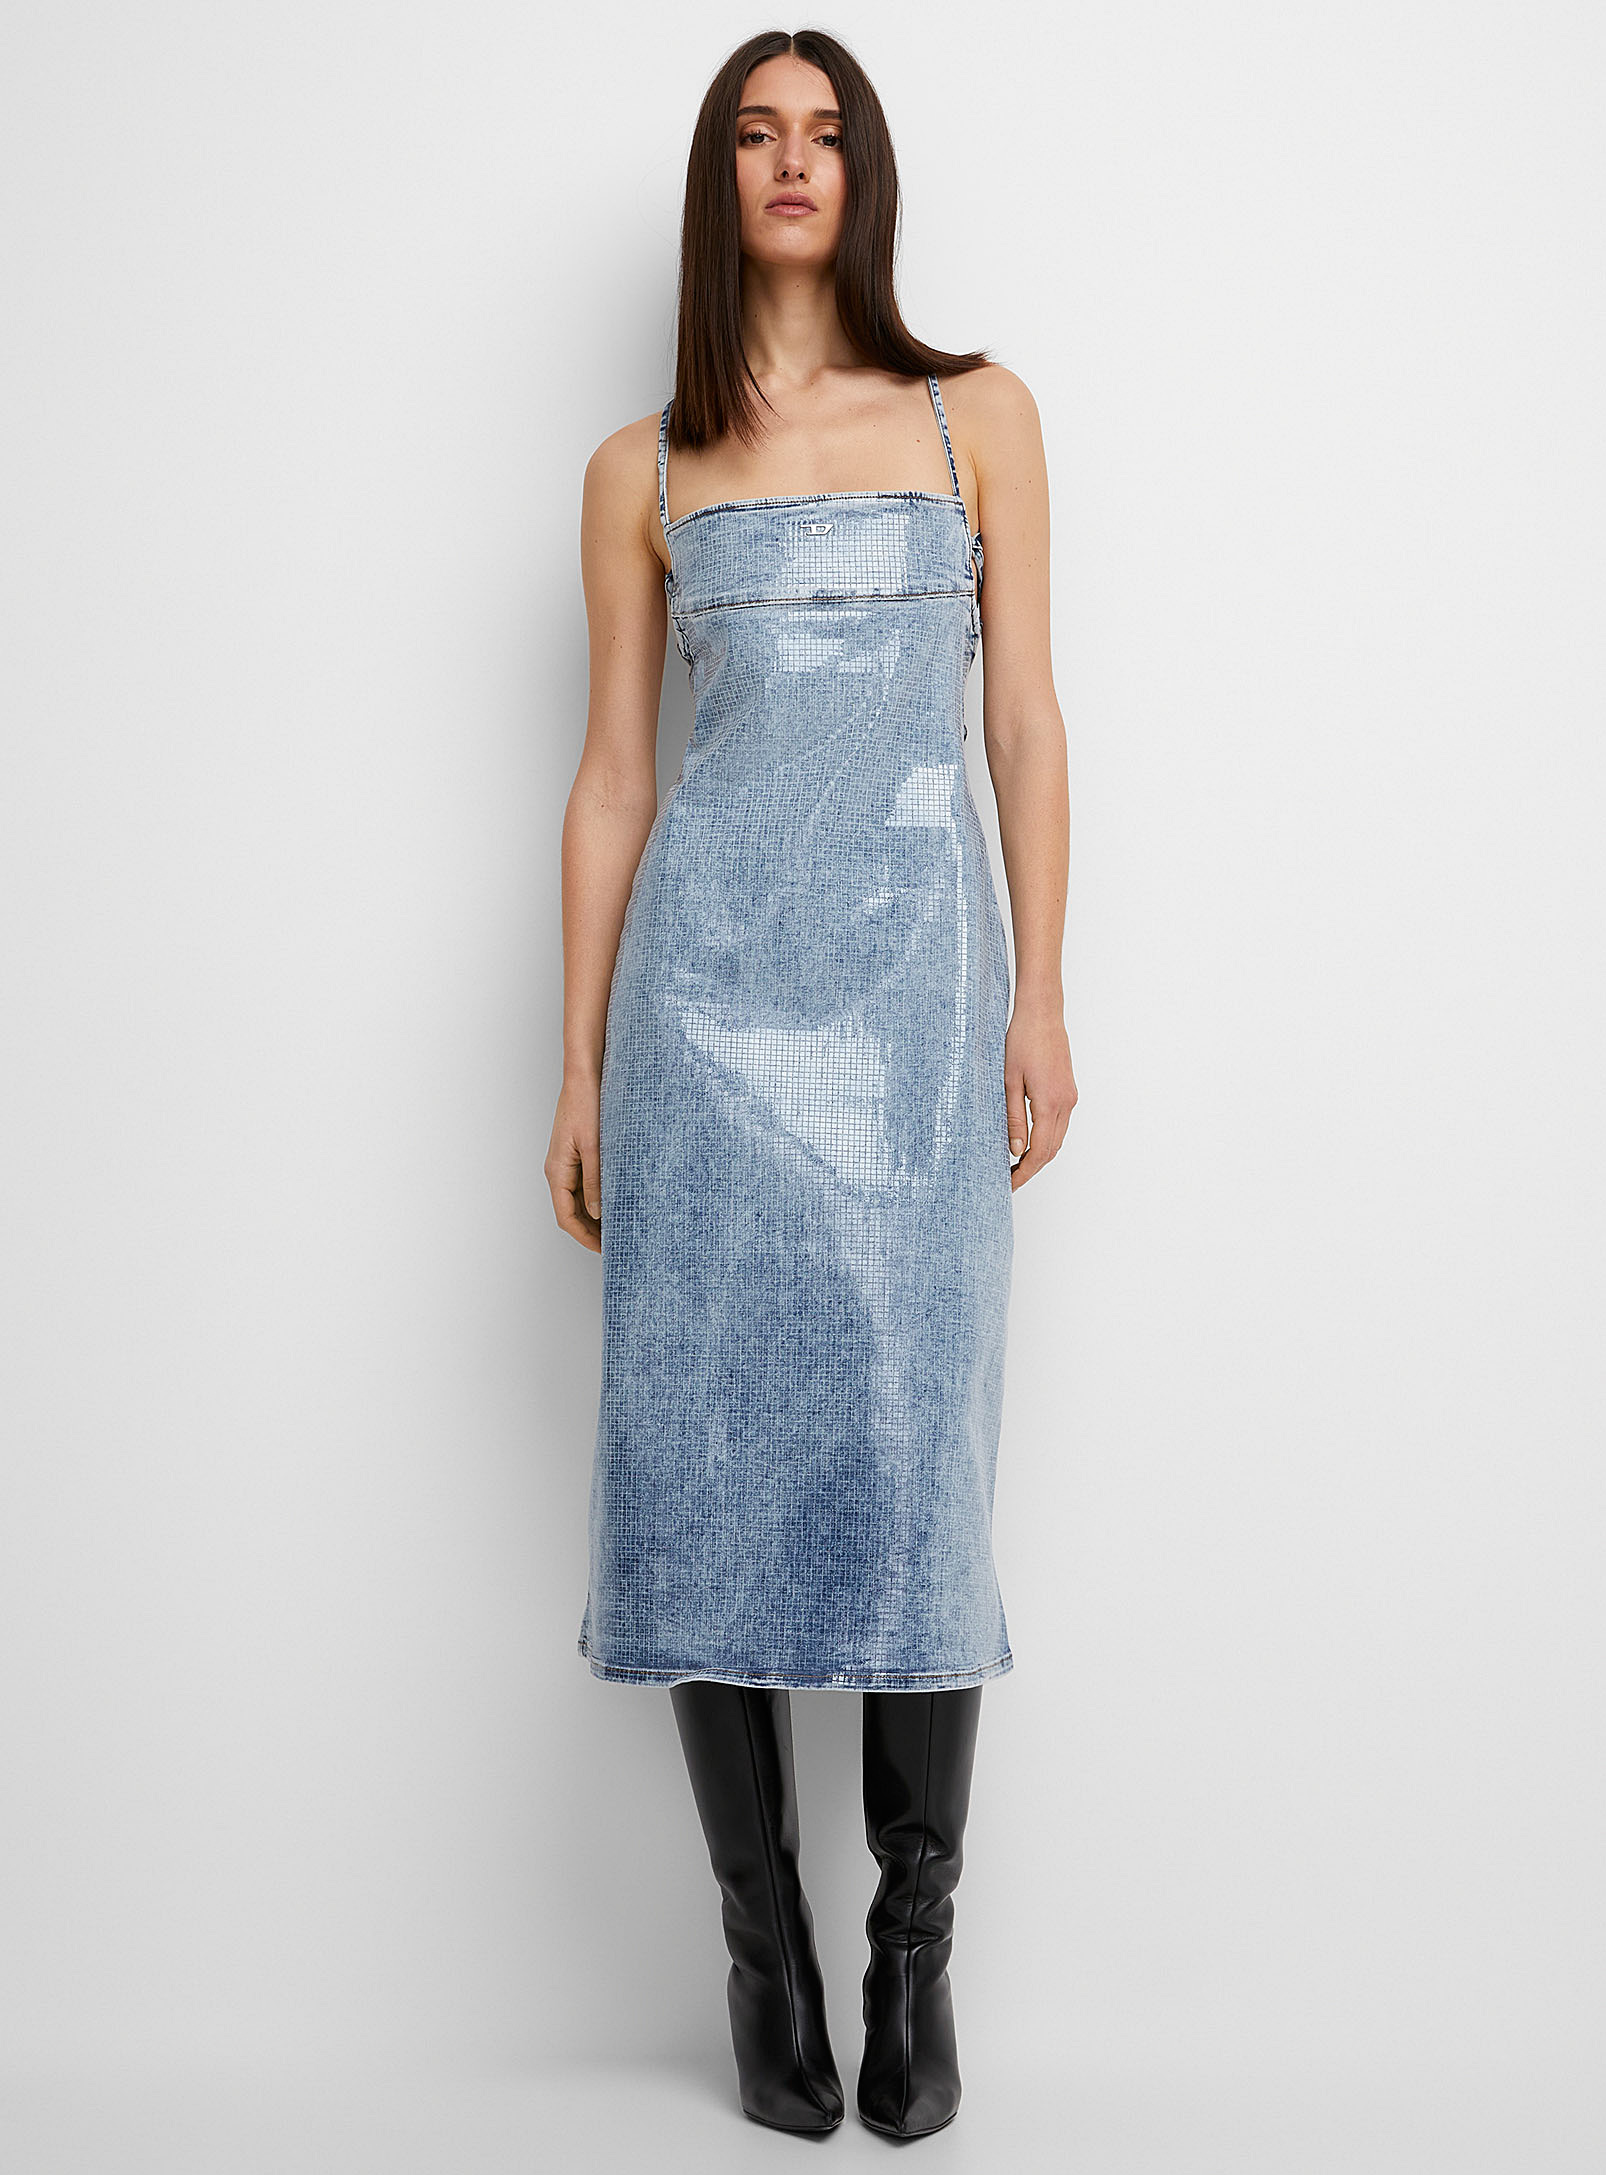 Diesel - Women's Sparkling denim dress